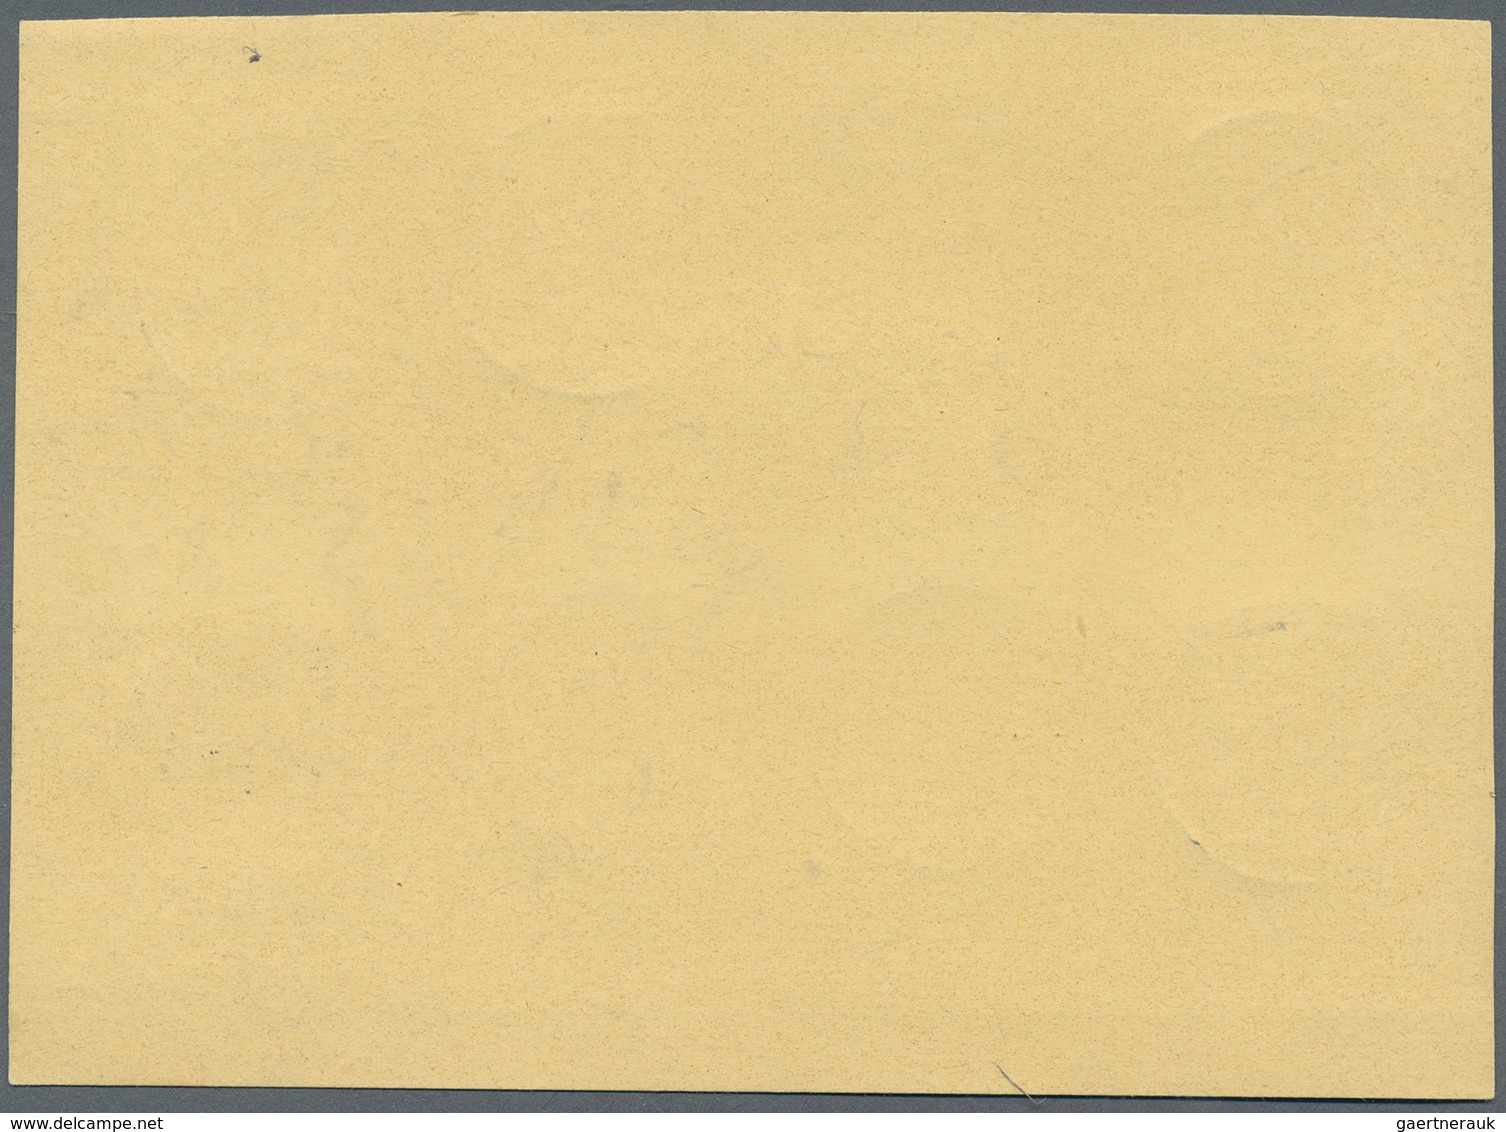 Bundesrepublik Deutschland: 1960, Heuss Lumogen, Kompletter Satz Auf Blanko-Karte, Jeder Wert Einzel - Covers & Documents